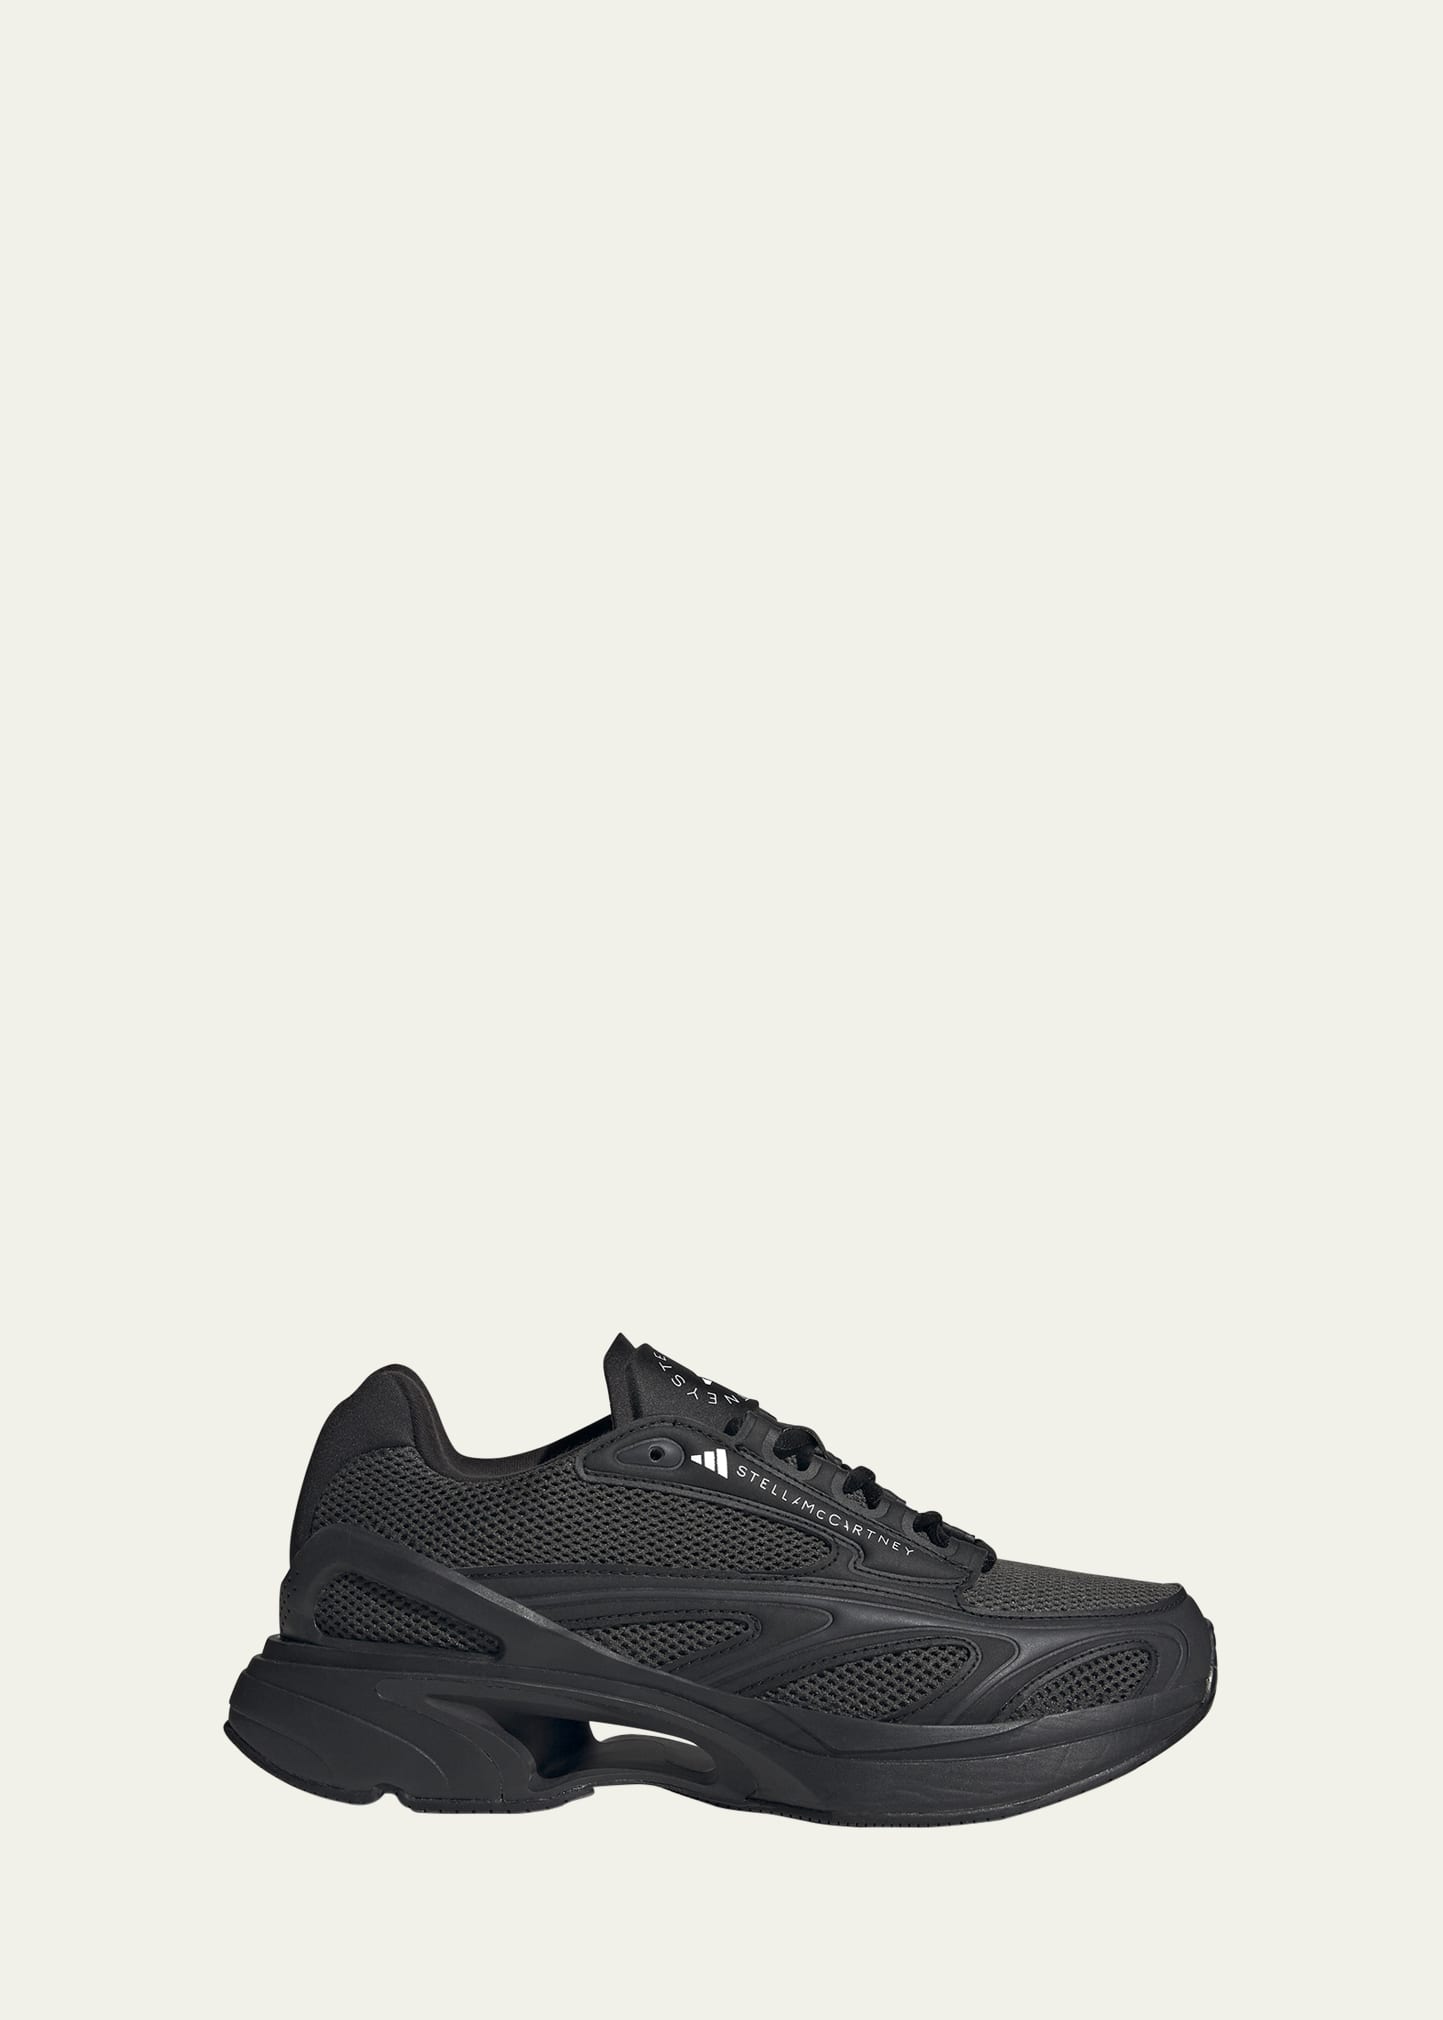 Shop Adidas By Stella Mccartney Sportswear 2000 Trainer Sneakers In Cblack/utiblk/ftw